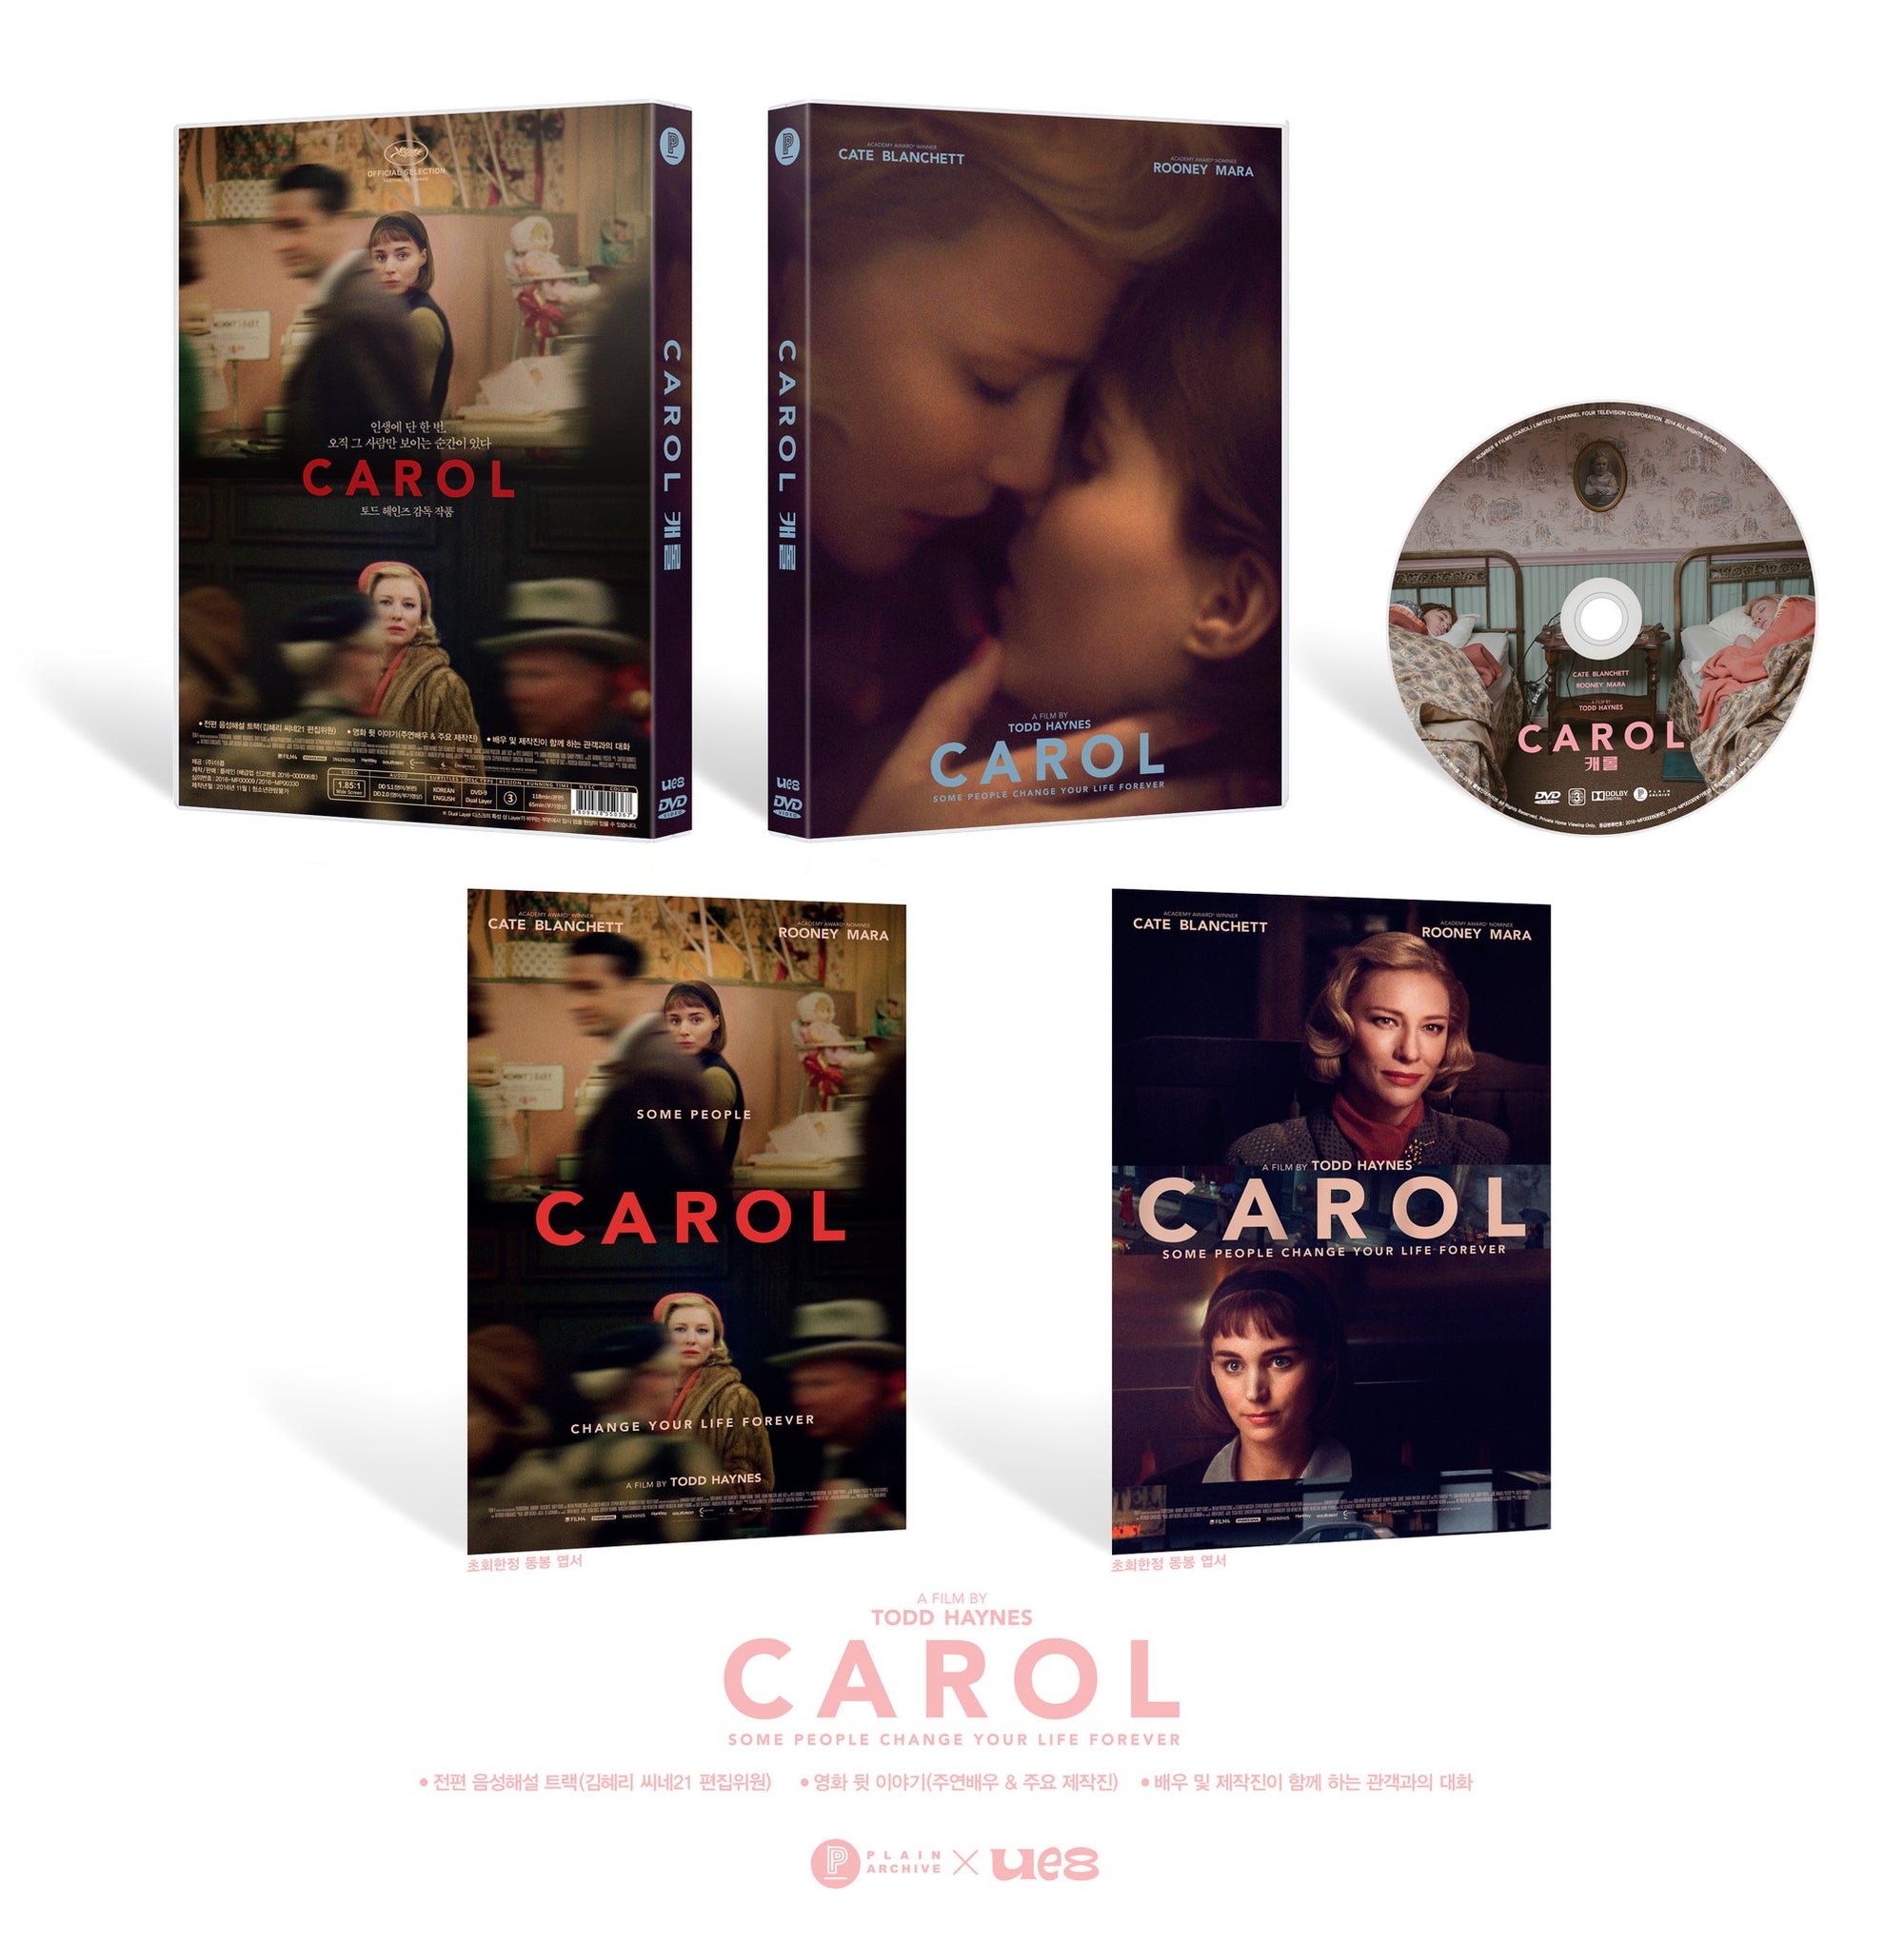 CAROL DVD (UE8 LIMITED EDITION)